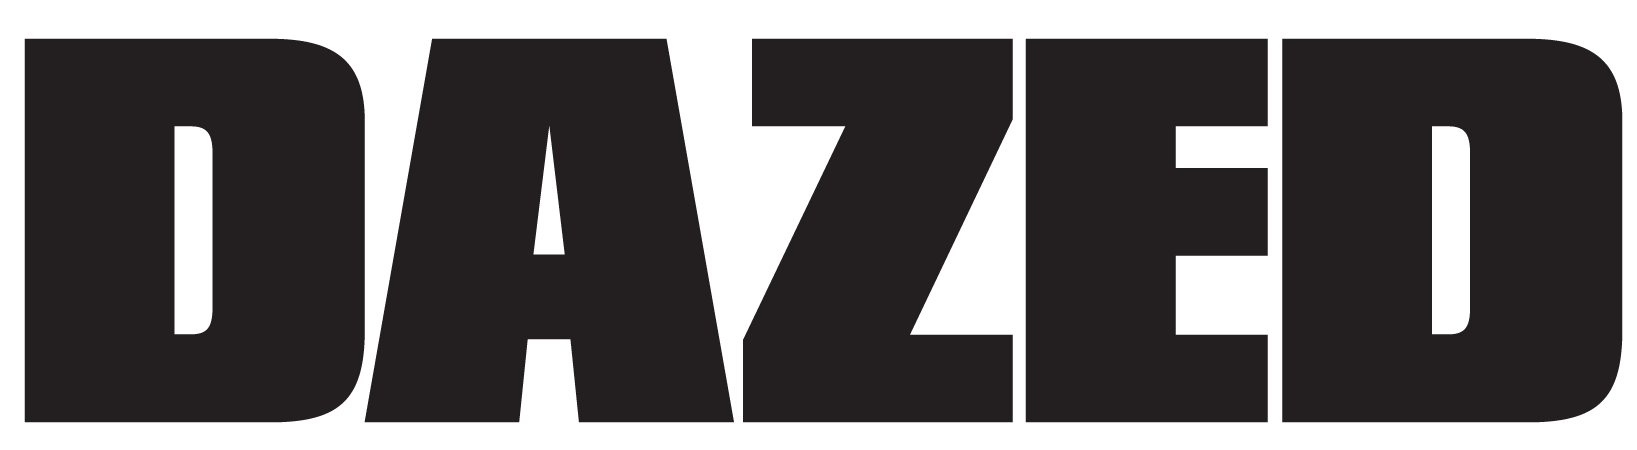 The Dazed logo